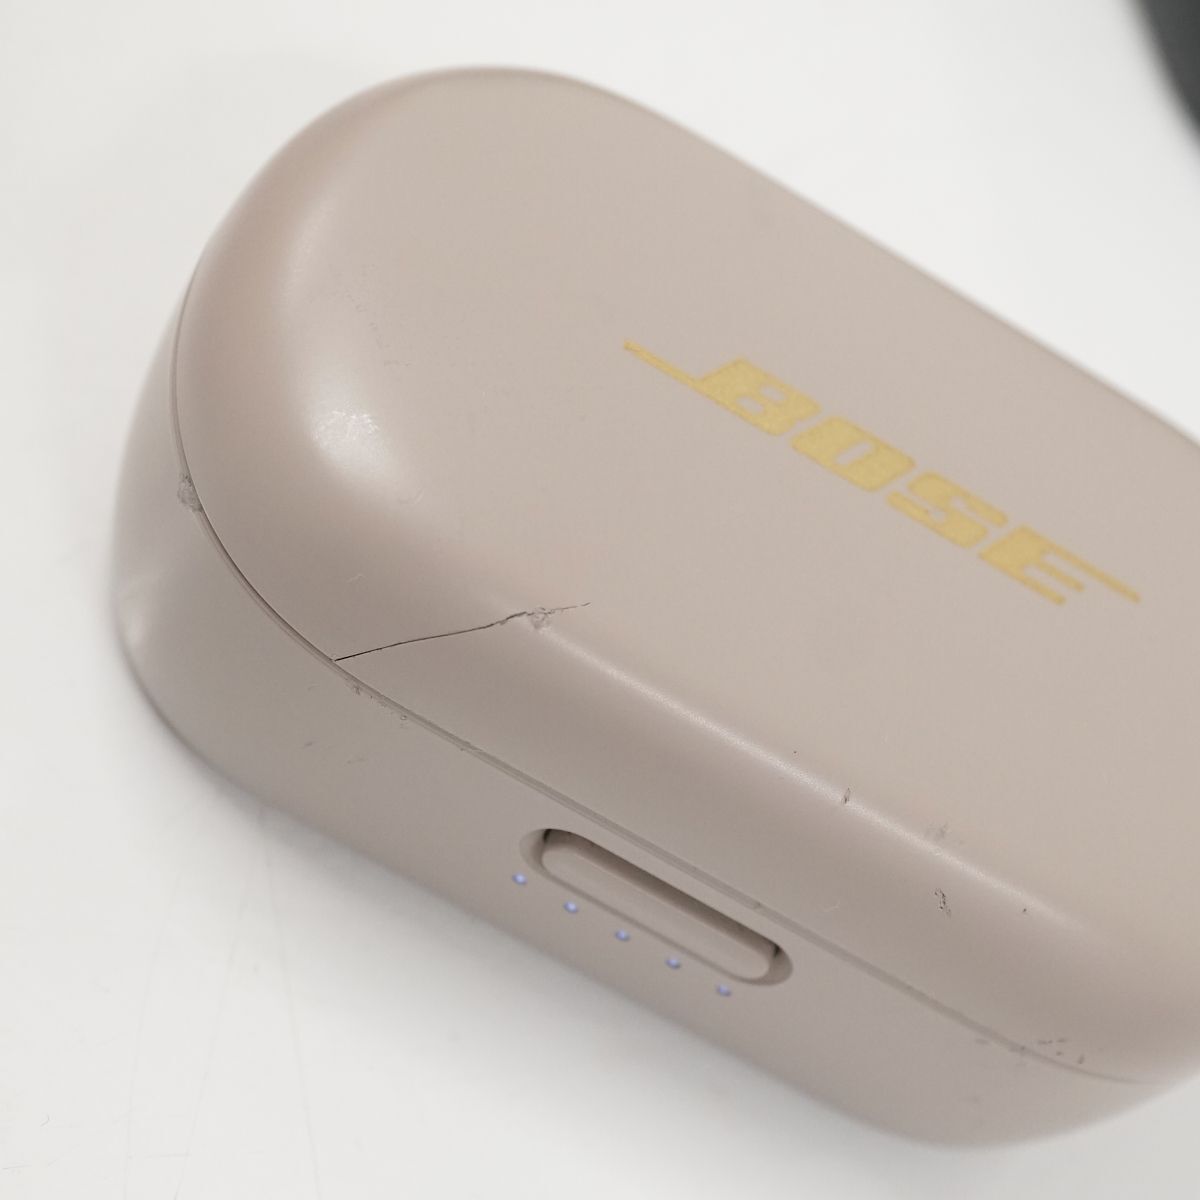 BOSE Sport Earbuds Quiet Comfort Earbuds беспроводной слуховай аппарат зарядка кейс суммировать USED товар 17 позиций комплект работоспособность не проверялась [ Junk ] 1 иен ~ V0478